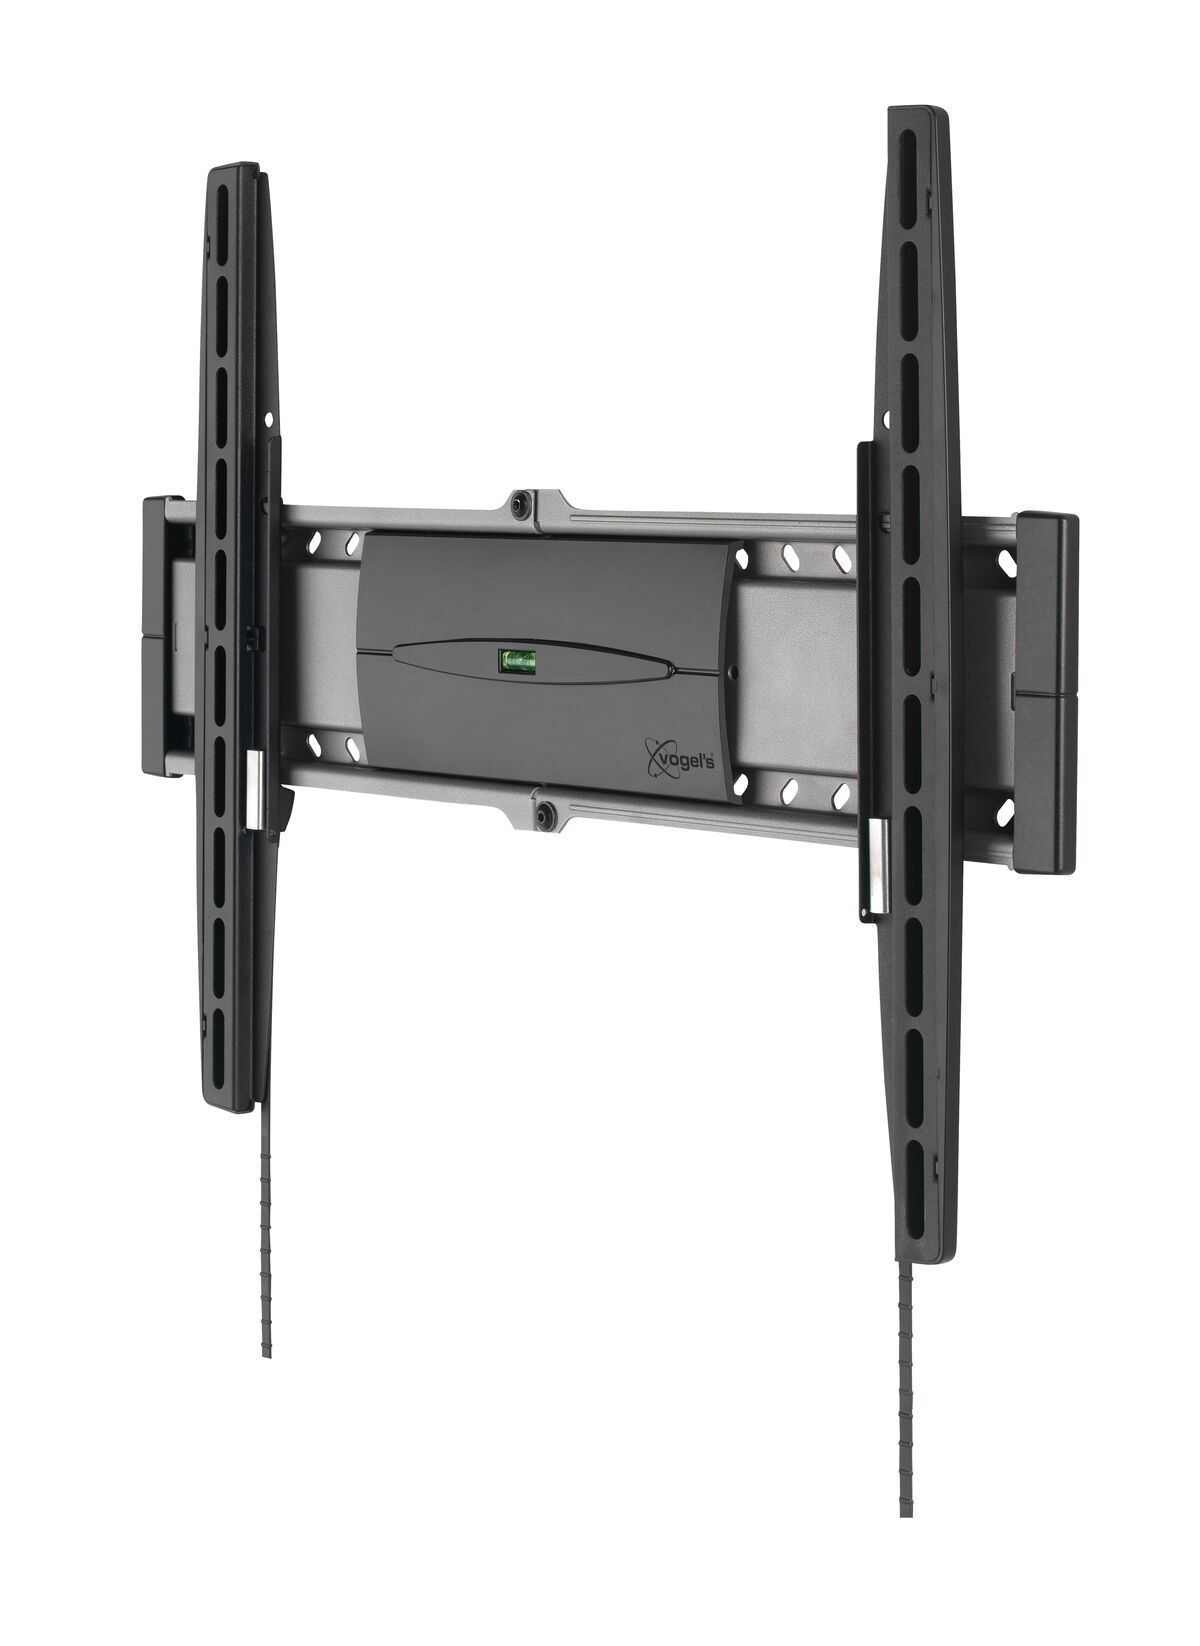 Vogel's EFW 8206 Soporte TV Fijo - Adecuado para televisores de 32 a 55 pulgadas hasta 30 kg - Product